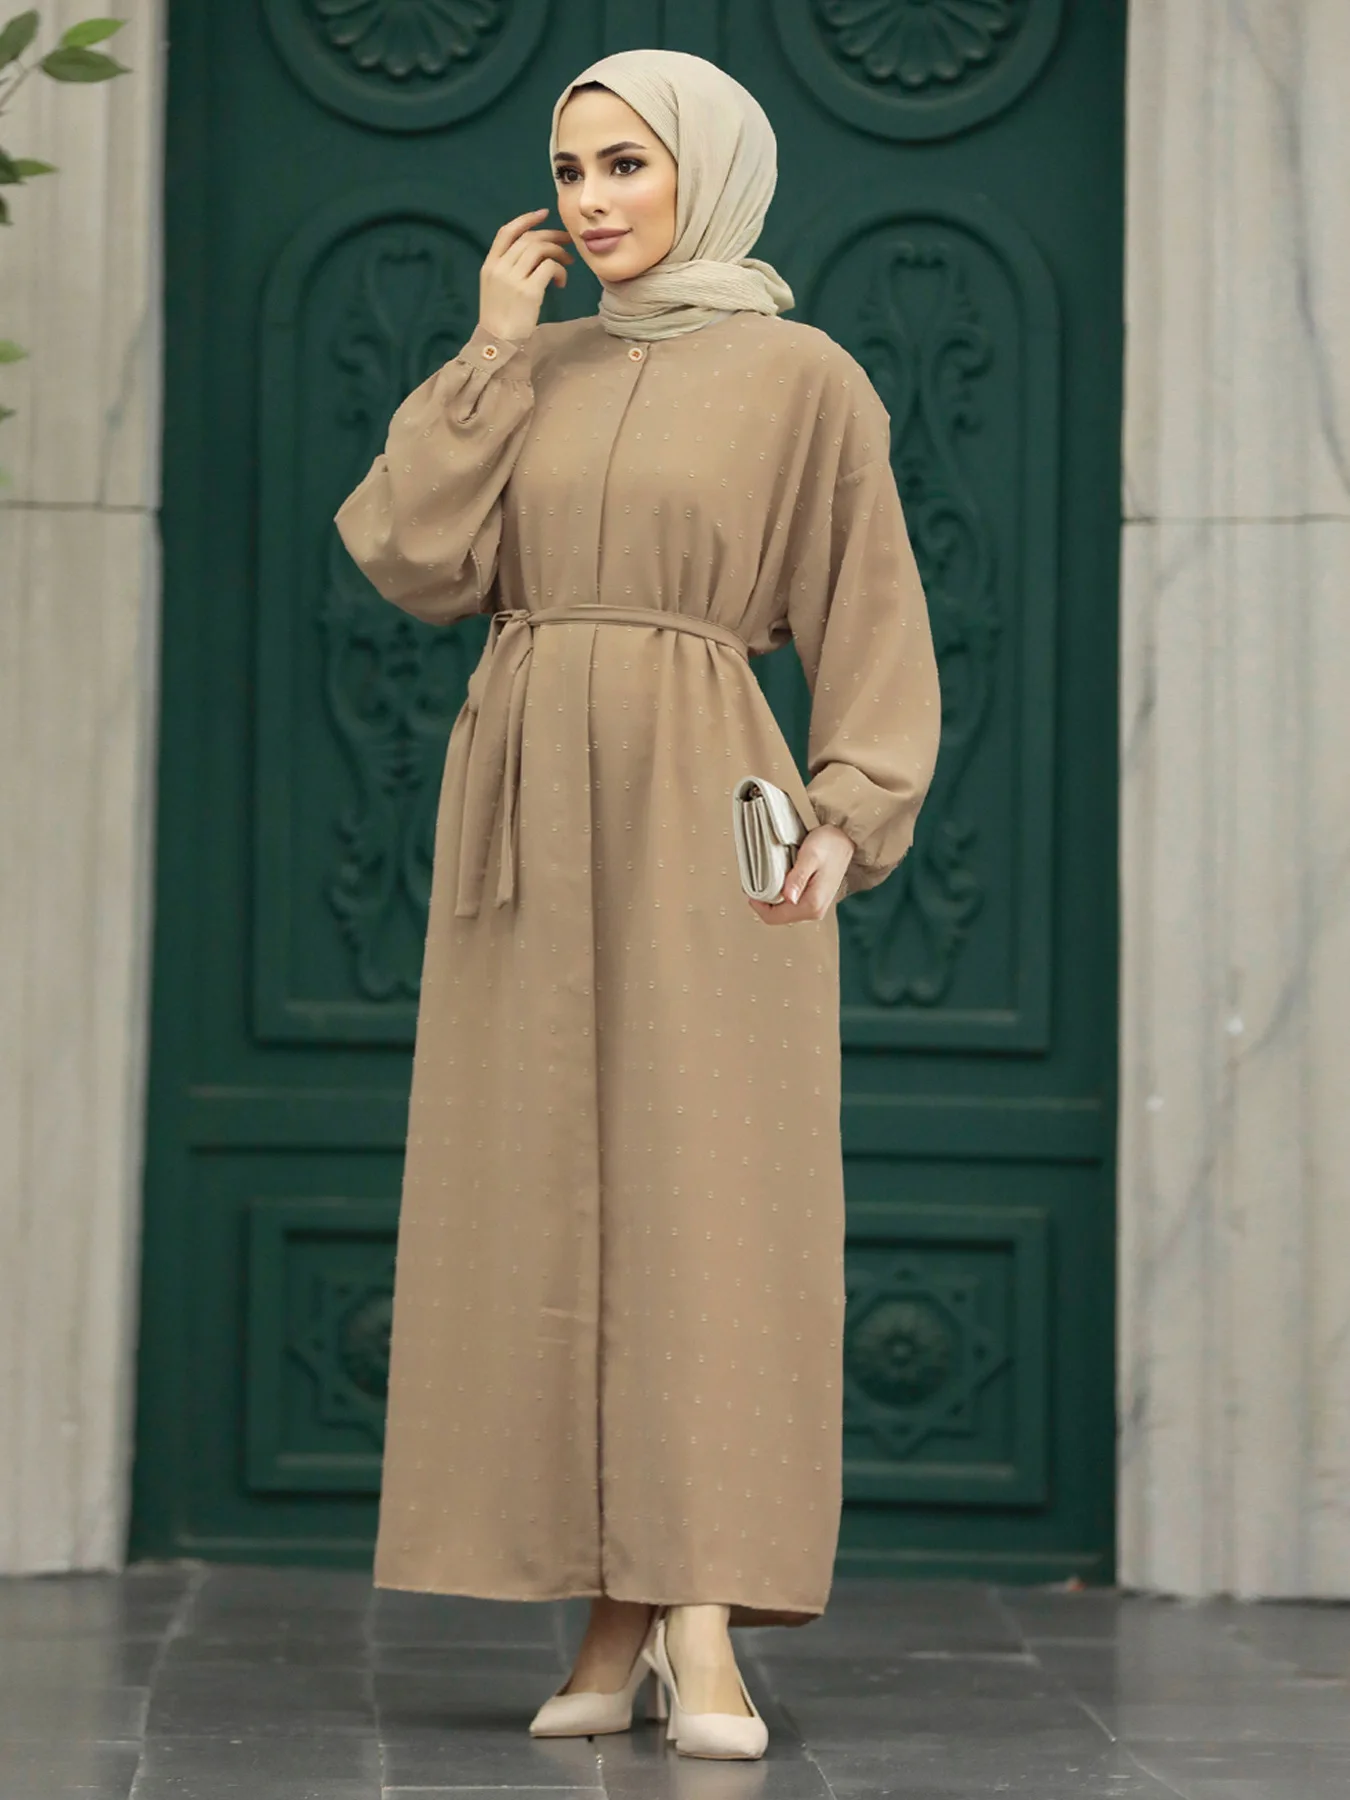 

Женское платье макси Рамадан Abaya Дубай на пуговицах турецкий кафтан ИД Мубарак Djellaba Исламская одежда арабский халат Caftan Jalabiya